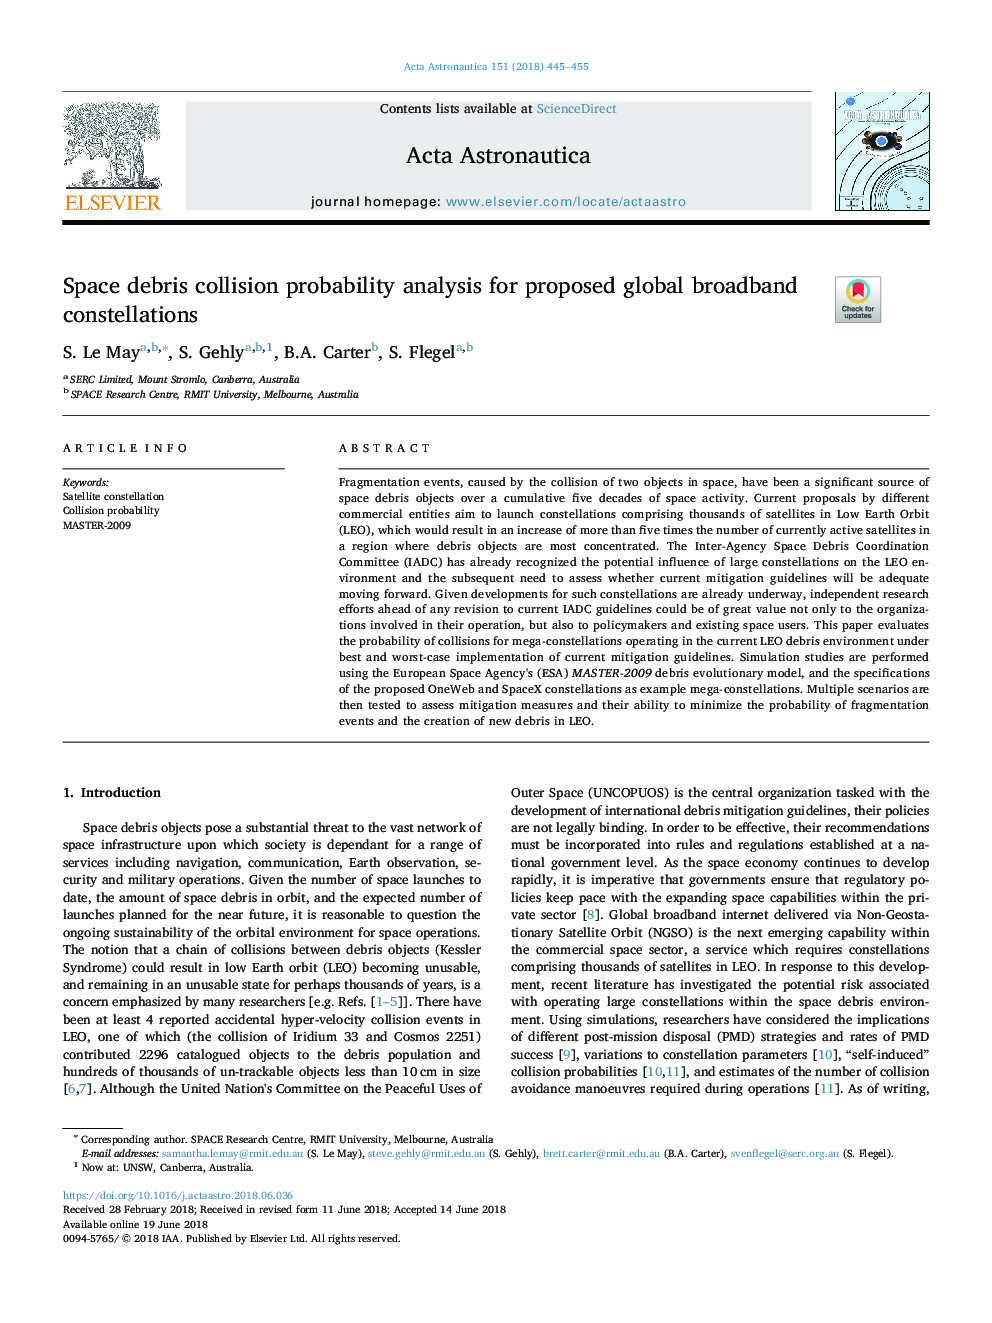 تجزیه و تحلیل احتمالی برخورد با انبارهای فضایی برای صورتهای جهانی پهنای باند پیشنهادی 